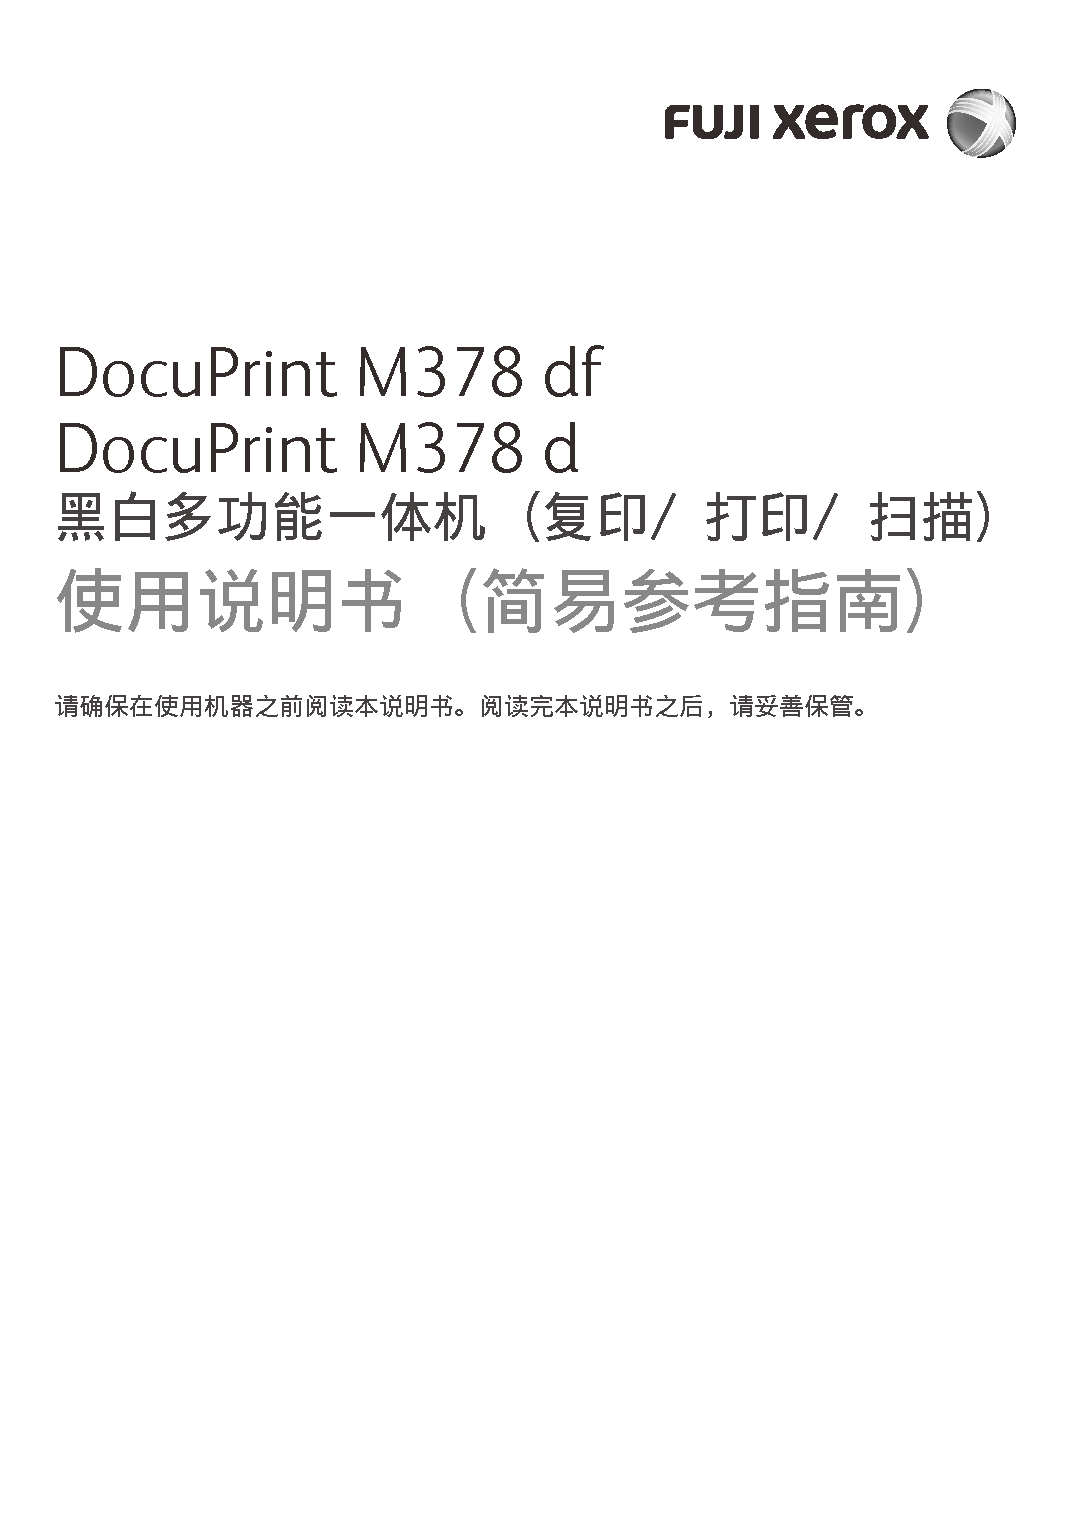 富士施乐 Fuji Xerox DocuPrint M378 d 快速参考指南 封面